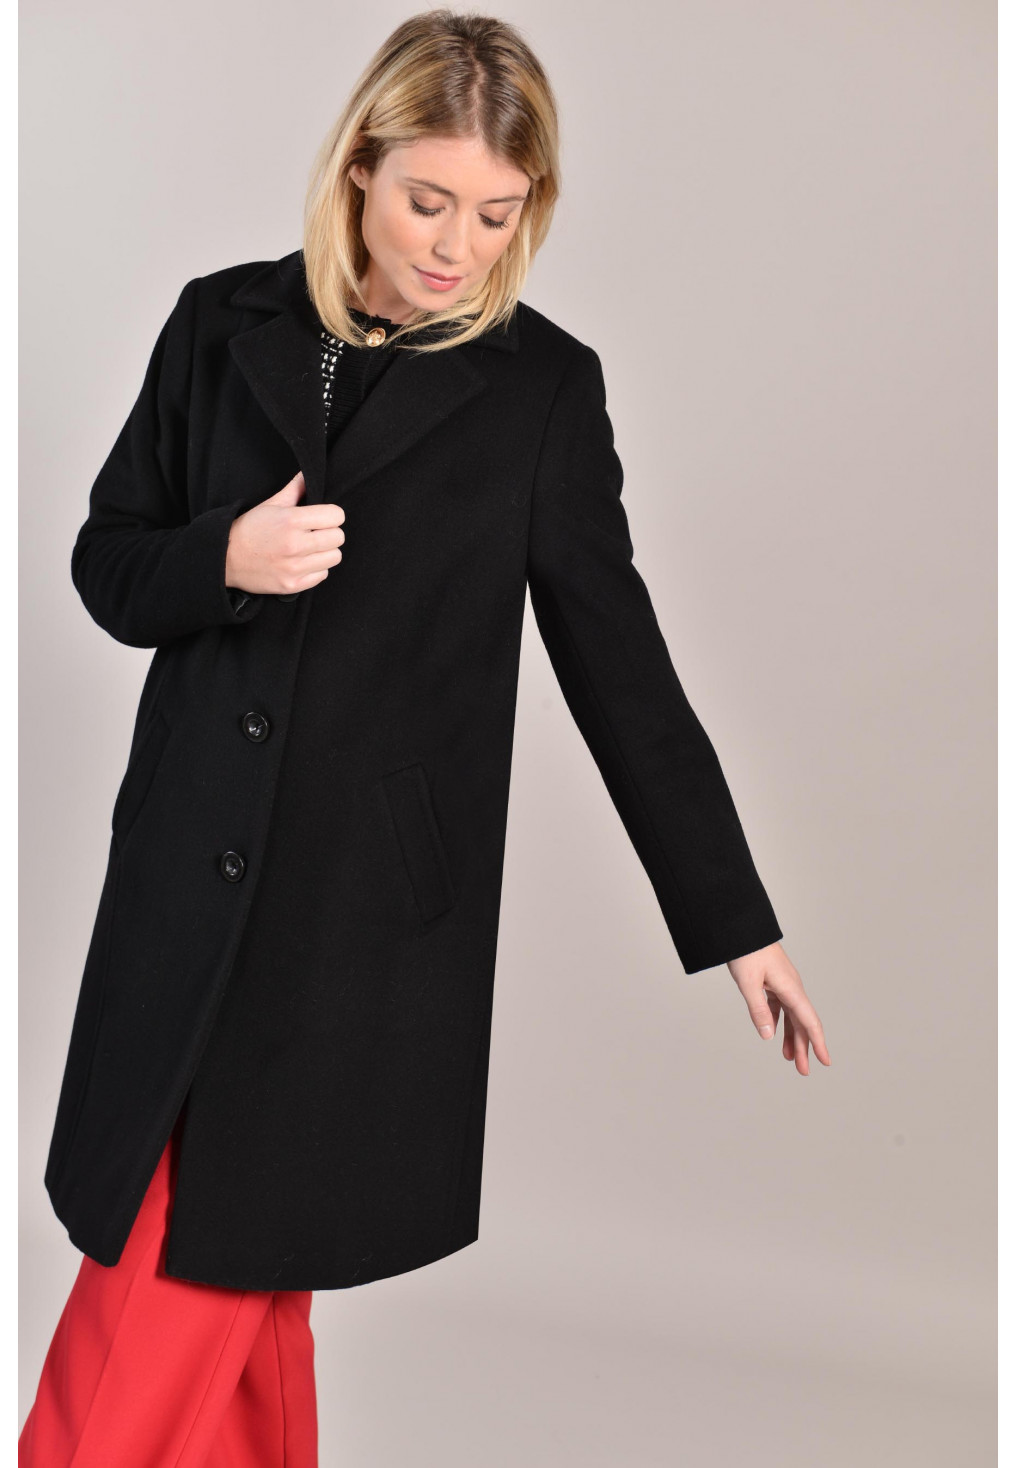 manteau laine noir femme court